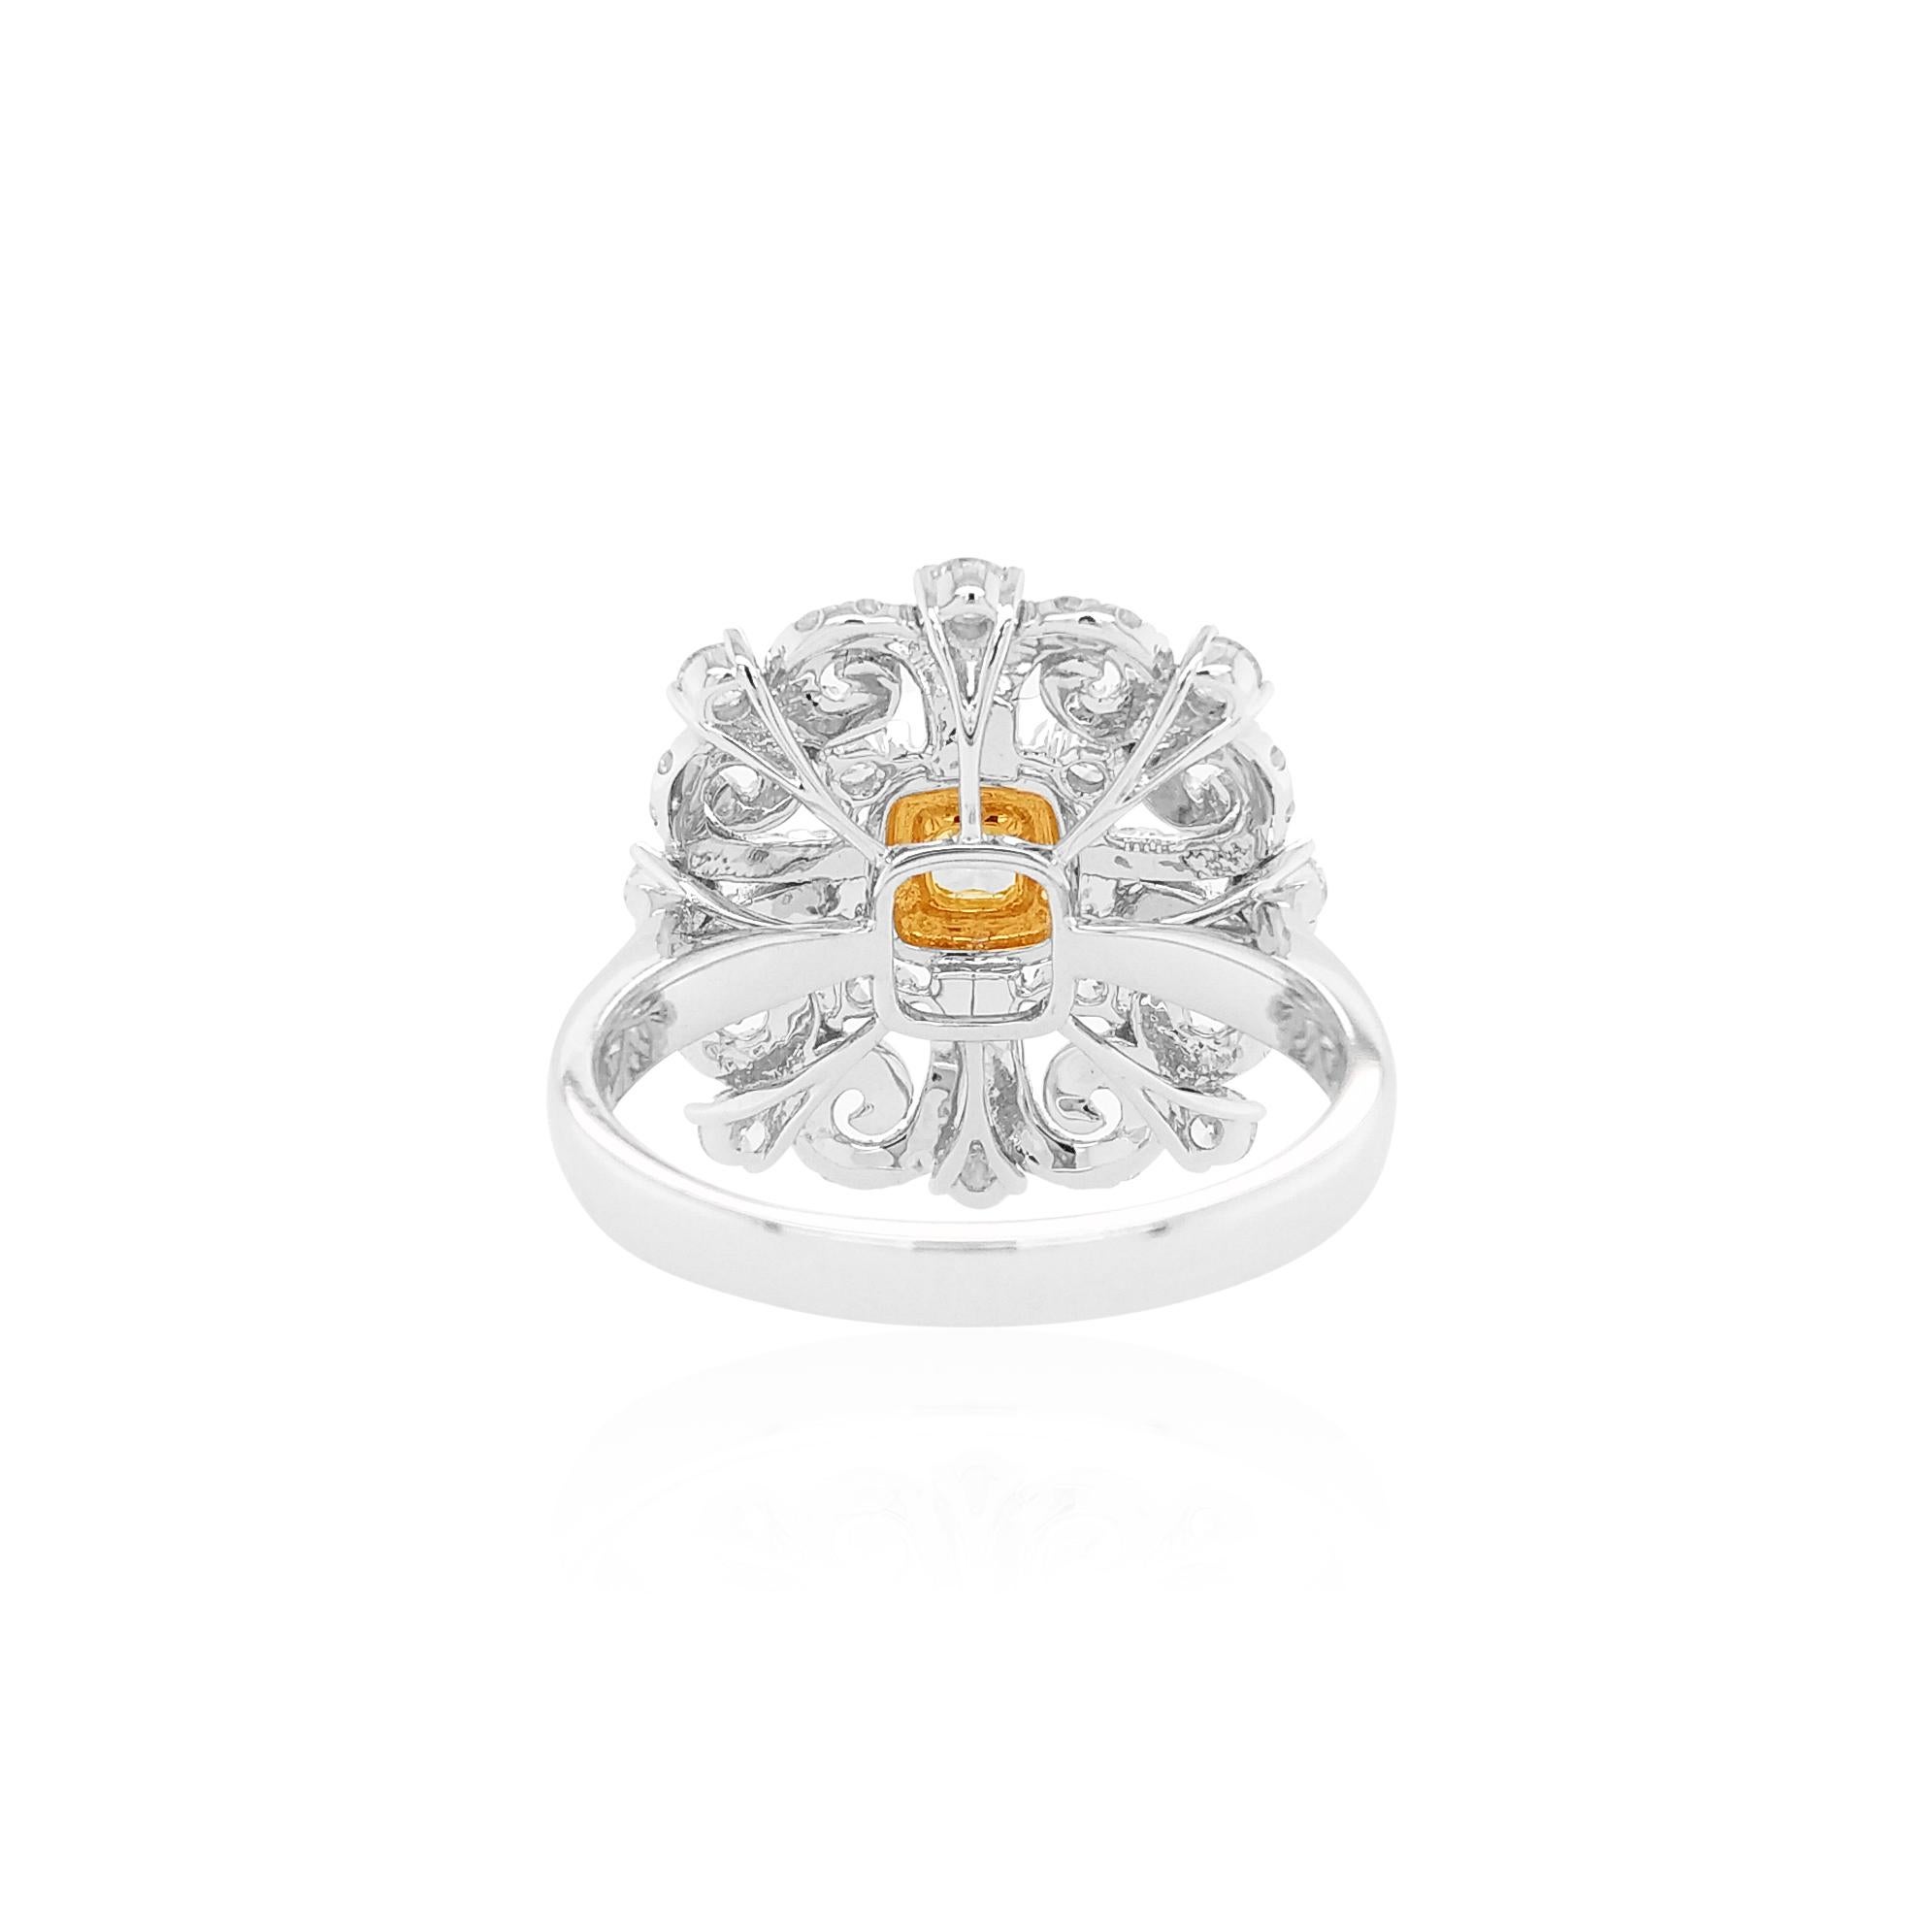 Cette étonnante bague en or blanc 18 carats présente en son centre un diamant jaune intense de fantaisie d'une riche teinte, entouré d'un halo de diamants jaunes et d'un motif audacieux de diamants blancs scintillants qui permet à la lumière de